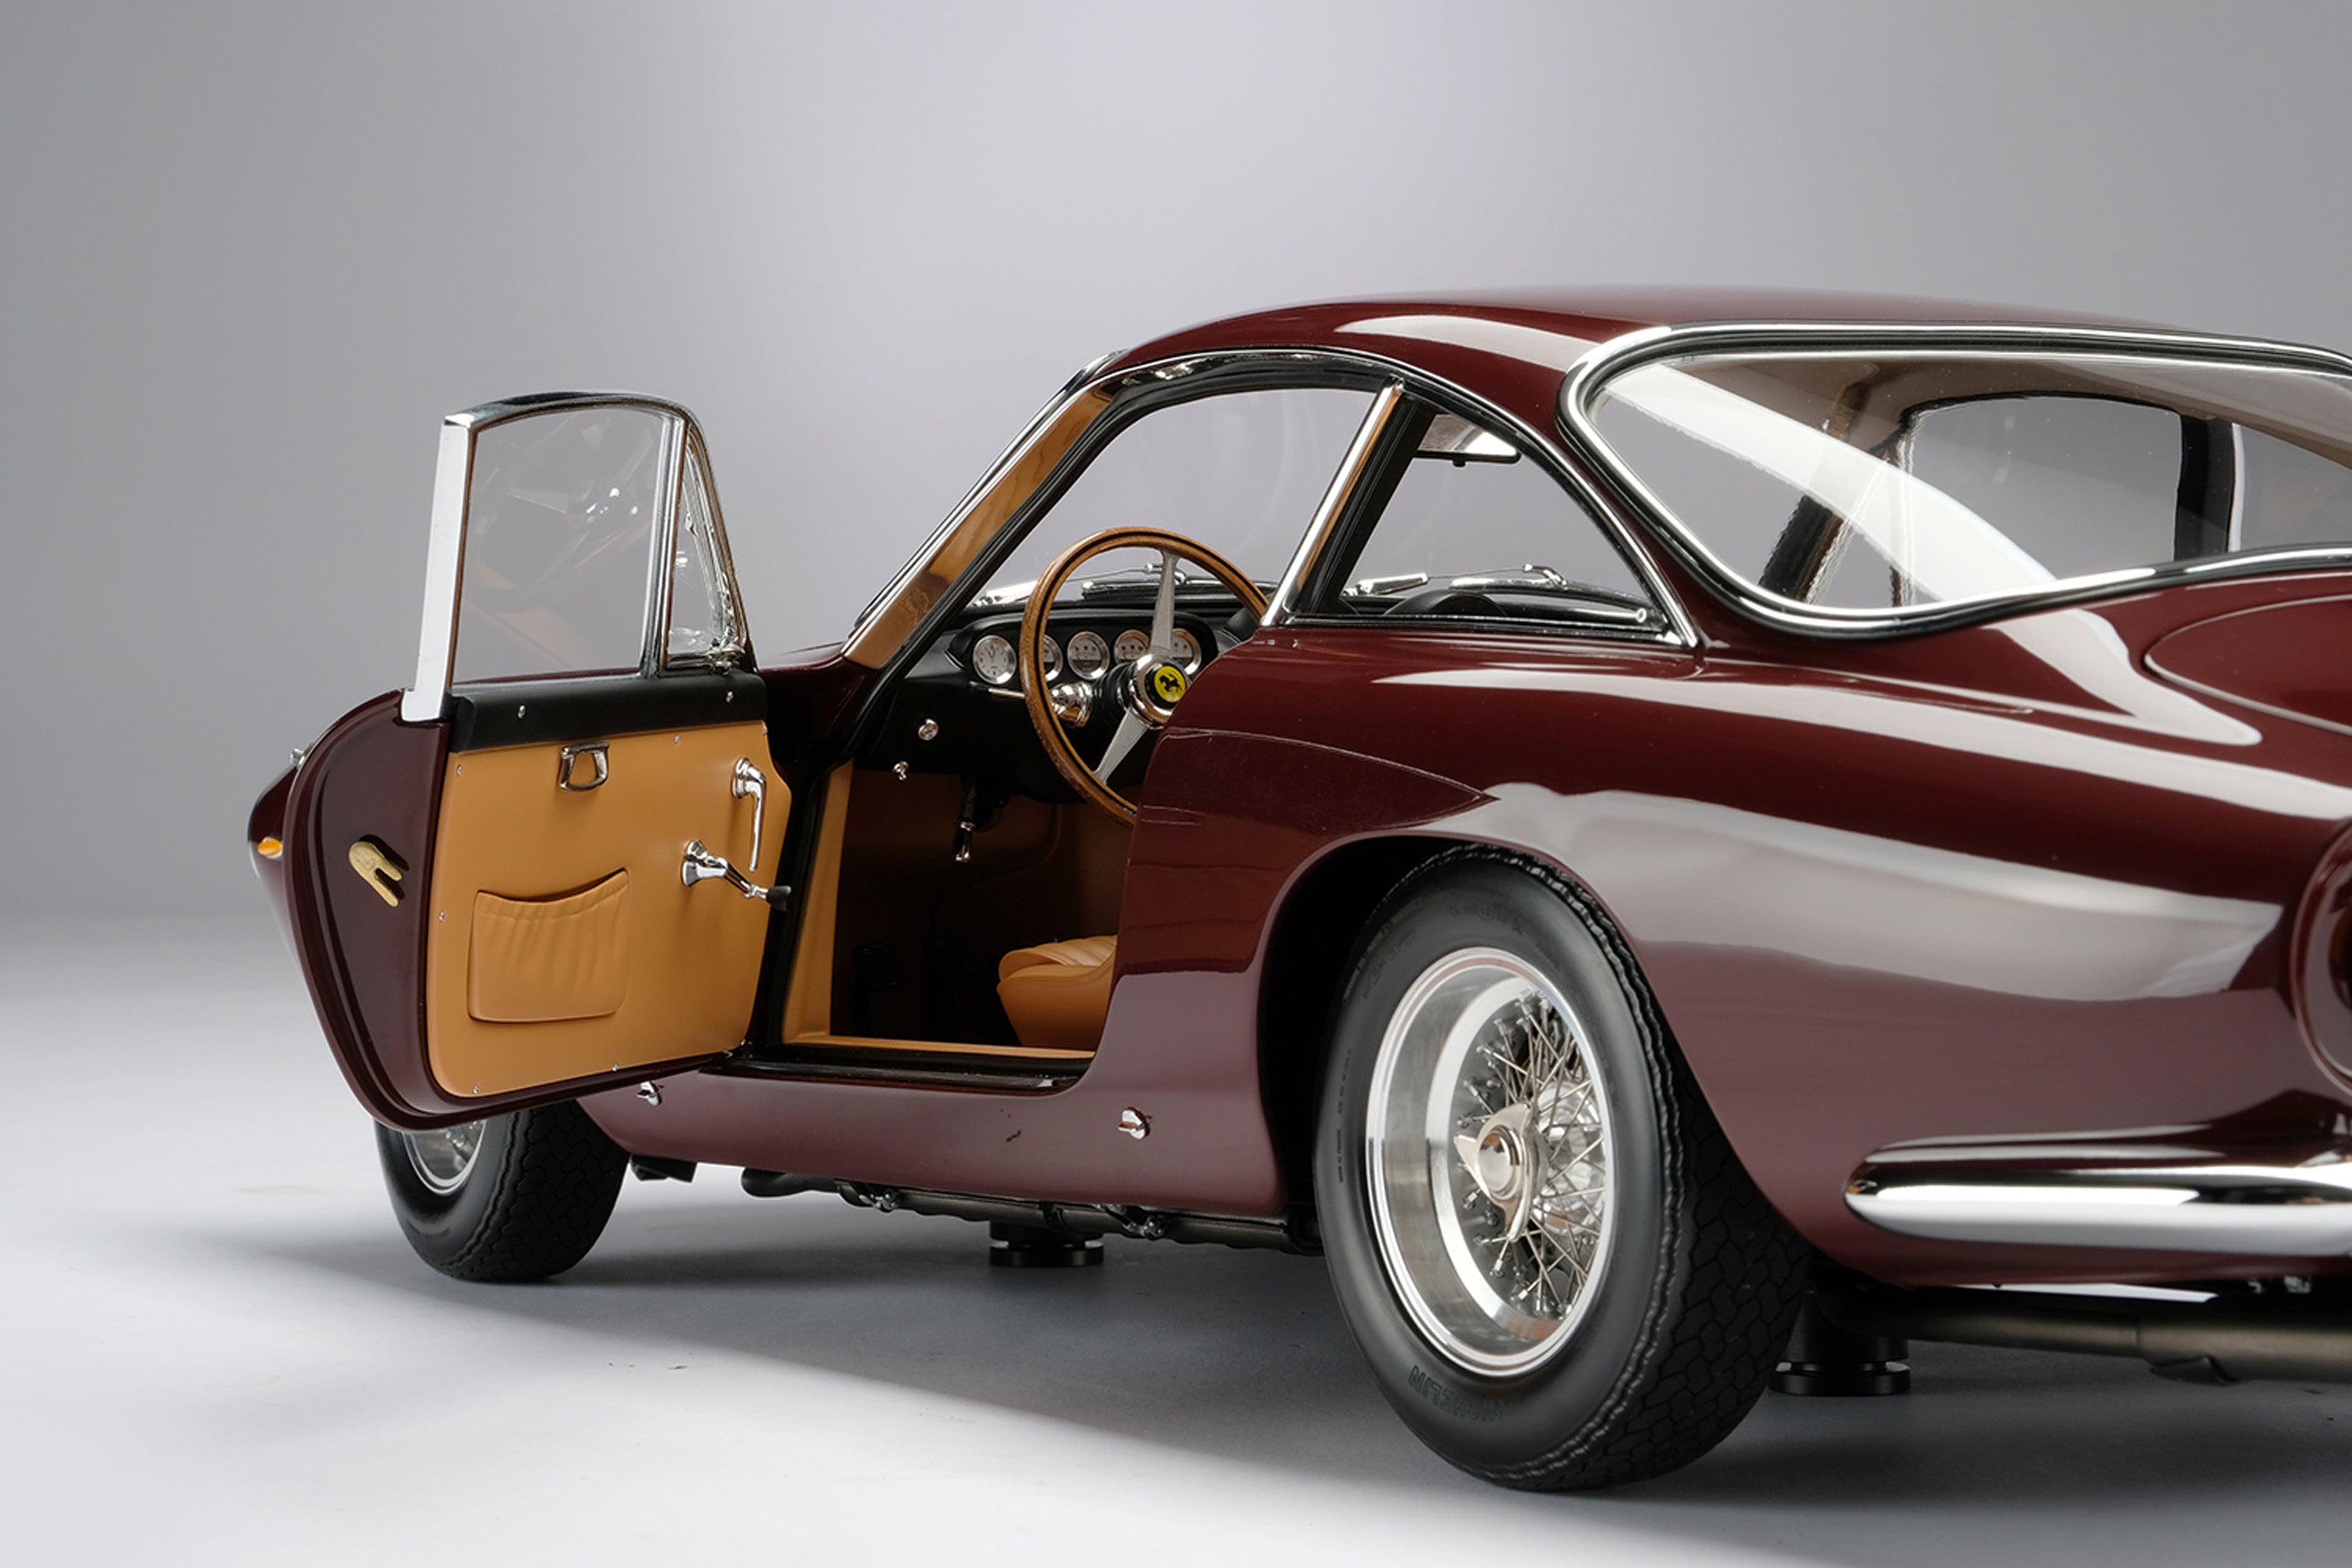 【高評価通販】KESS 1/43 フェラーリ 250 GT ルッソ スペシャル ミード 1963 レッド 400台限定 Kess 1:43 Ferrari 250 GT Lusso Speciale Meade 乗用車